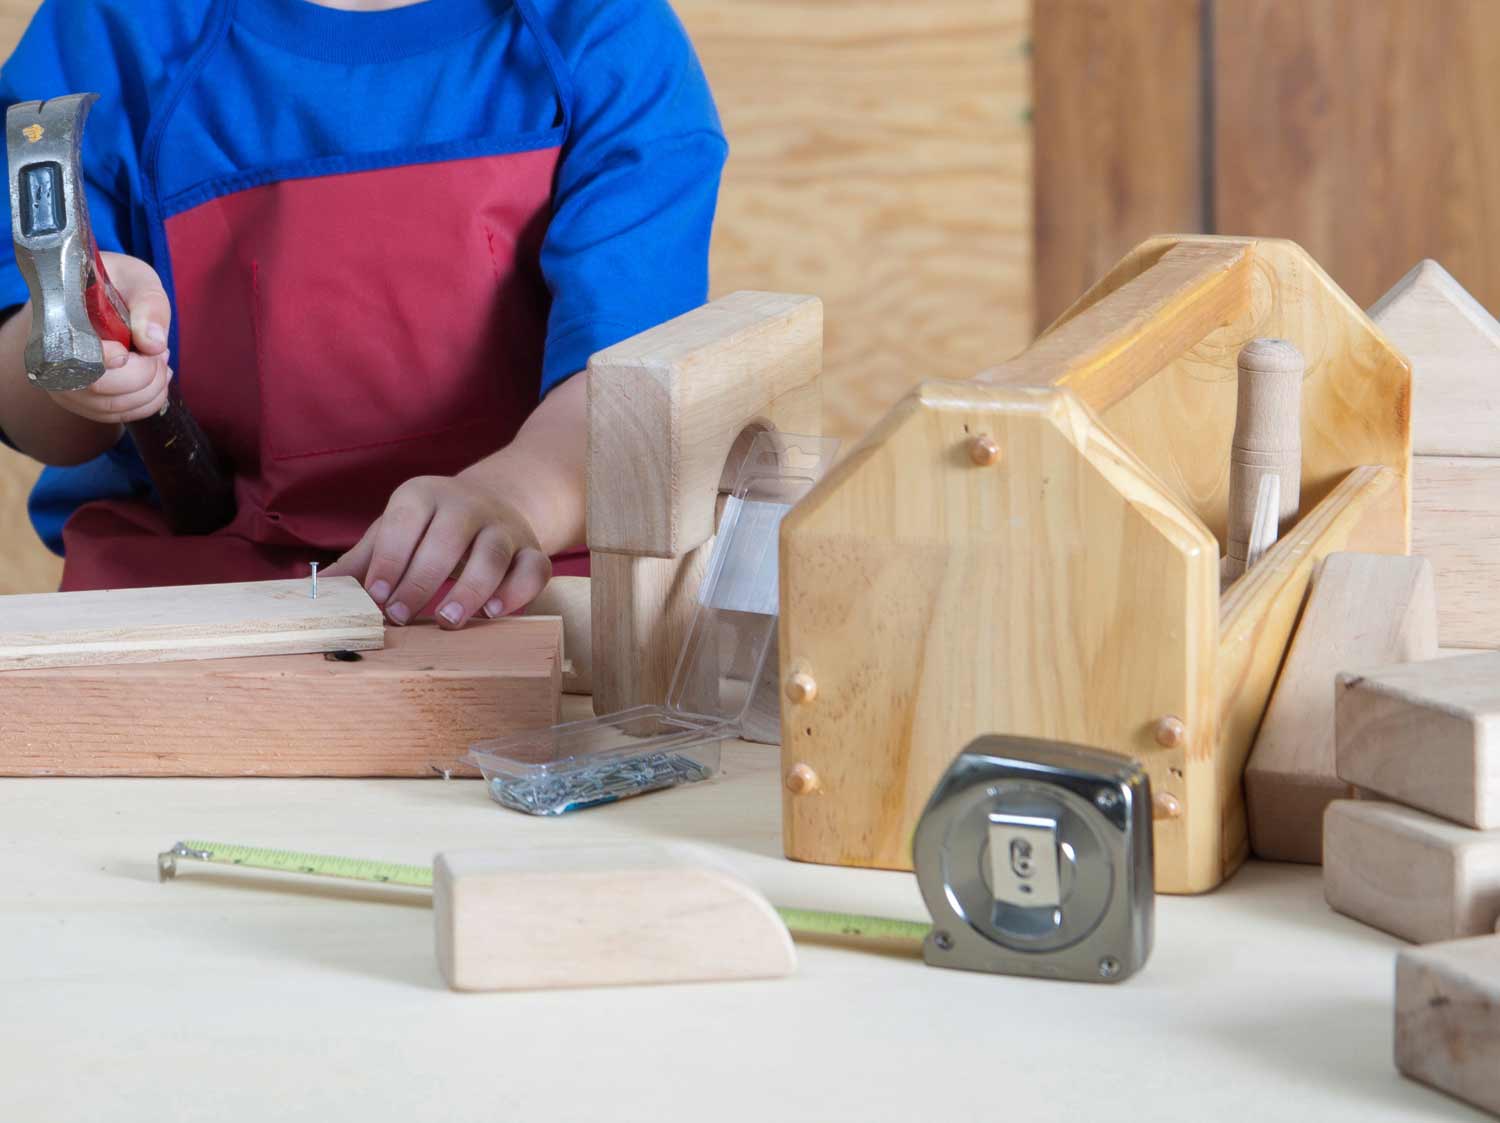 Jouet boîte à outils en bois, jeu de bricolage pour enfants